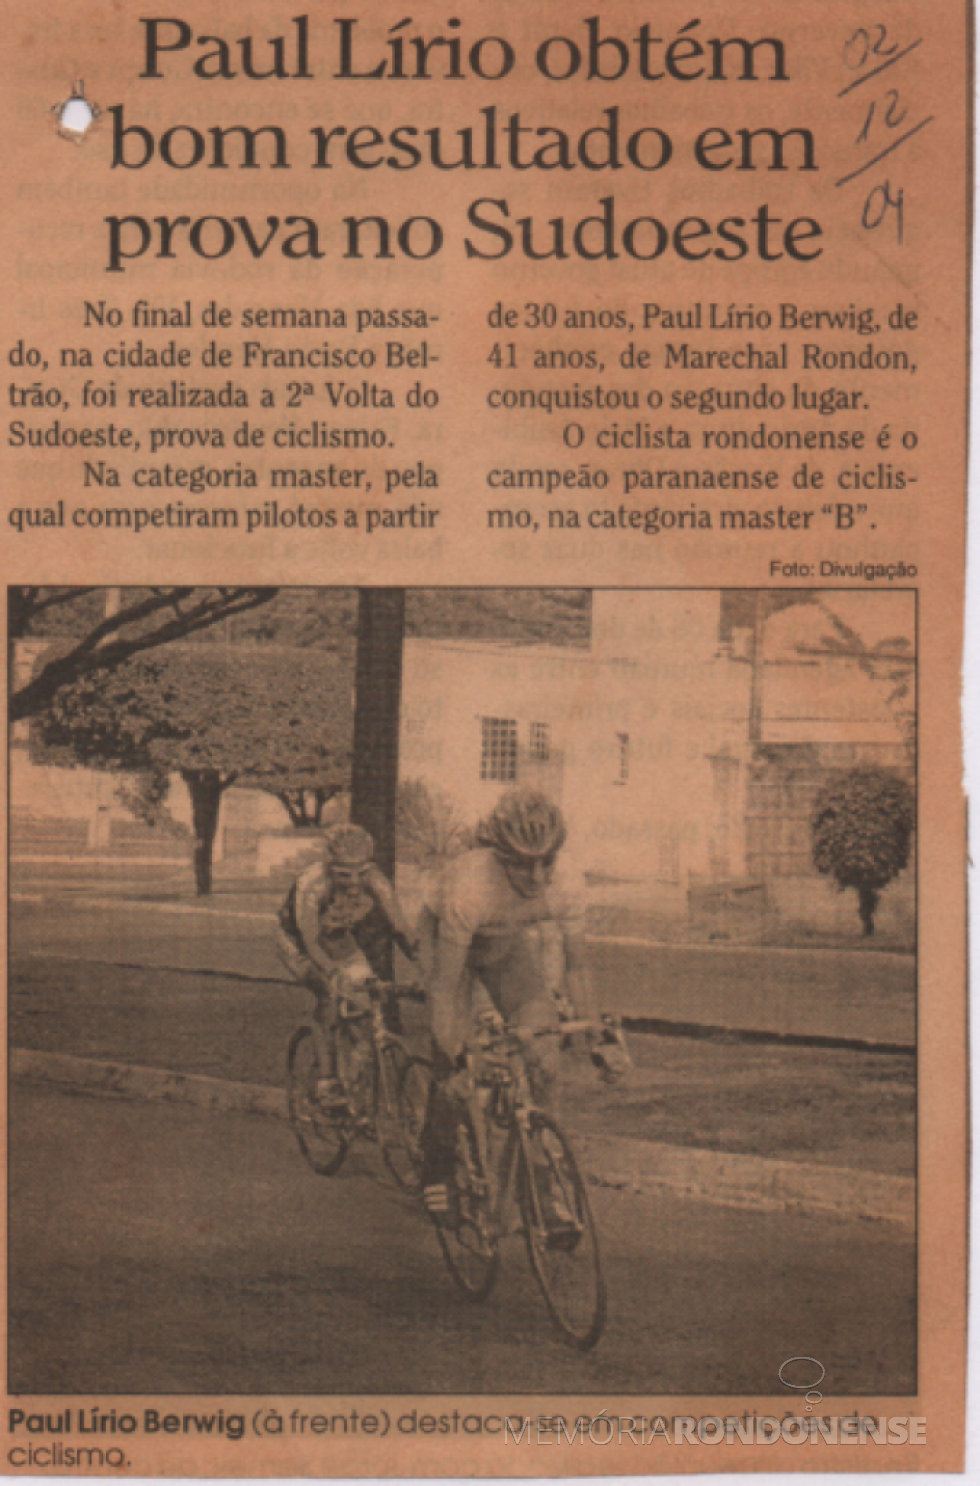 || Recorte de jornal (não identificado) sobre a classificação do ciclista rondonense Paul Lirio Berwig na 2ª Prova Sudoeste de Ciclismo, em final de 2004.
Imagem: Acervo do atleta - FOTO 9 - 